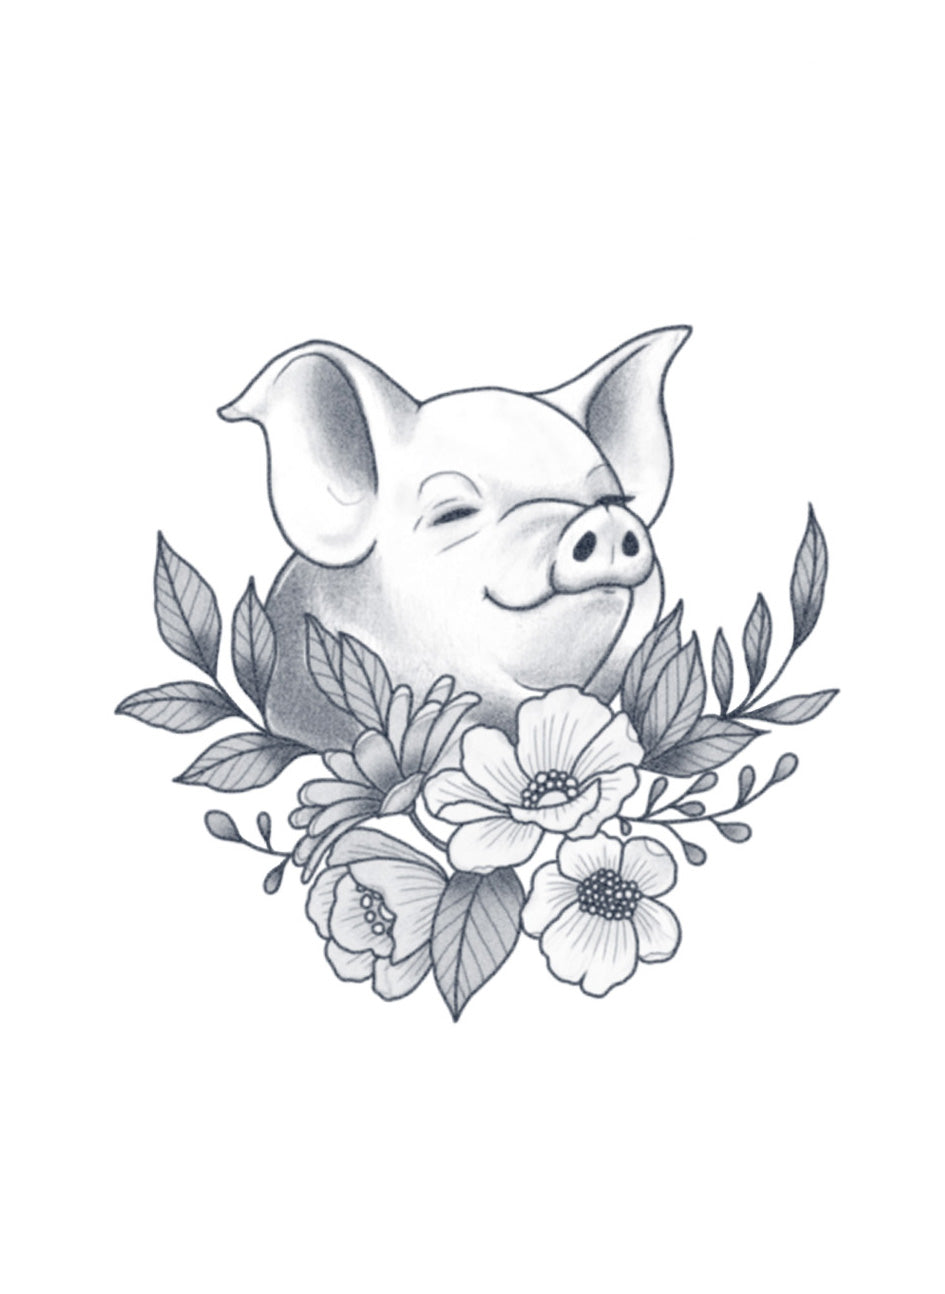 Happy Piggy